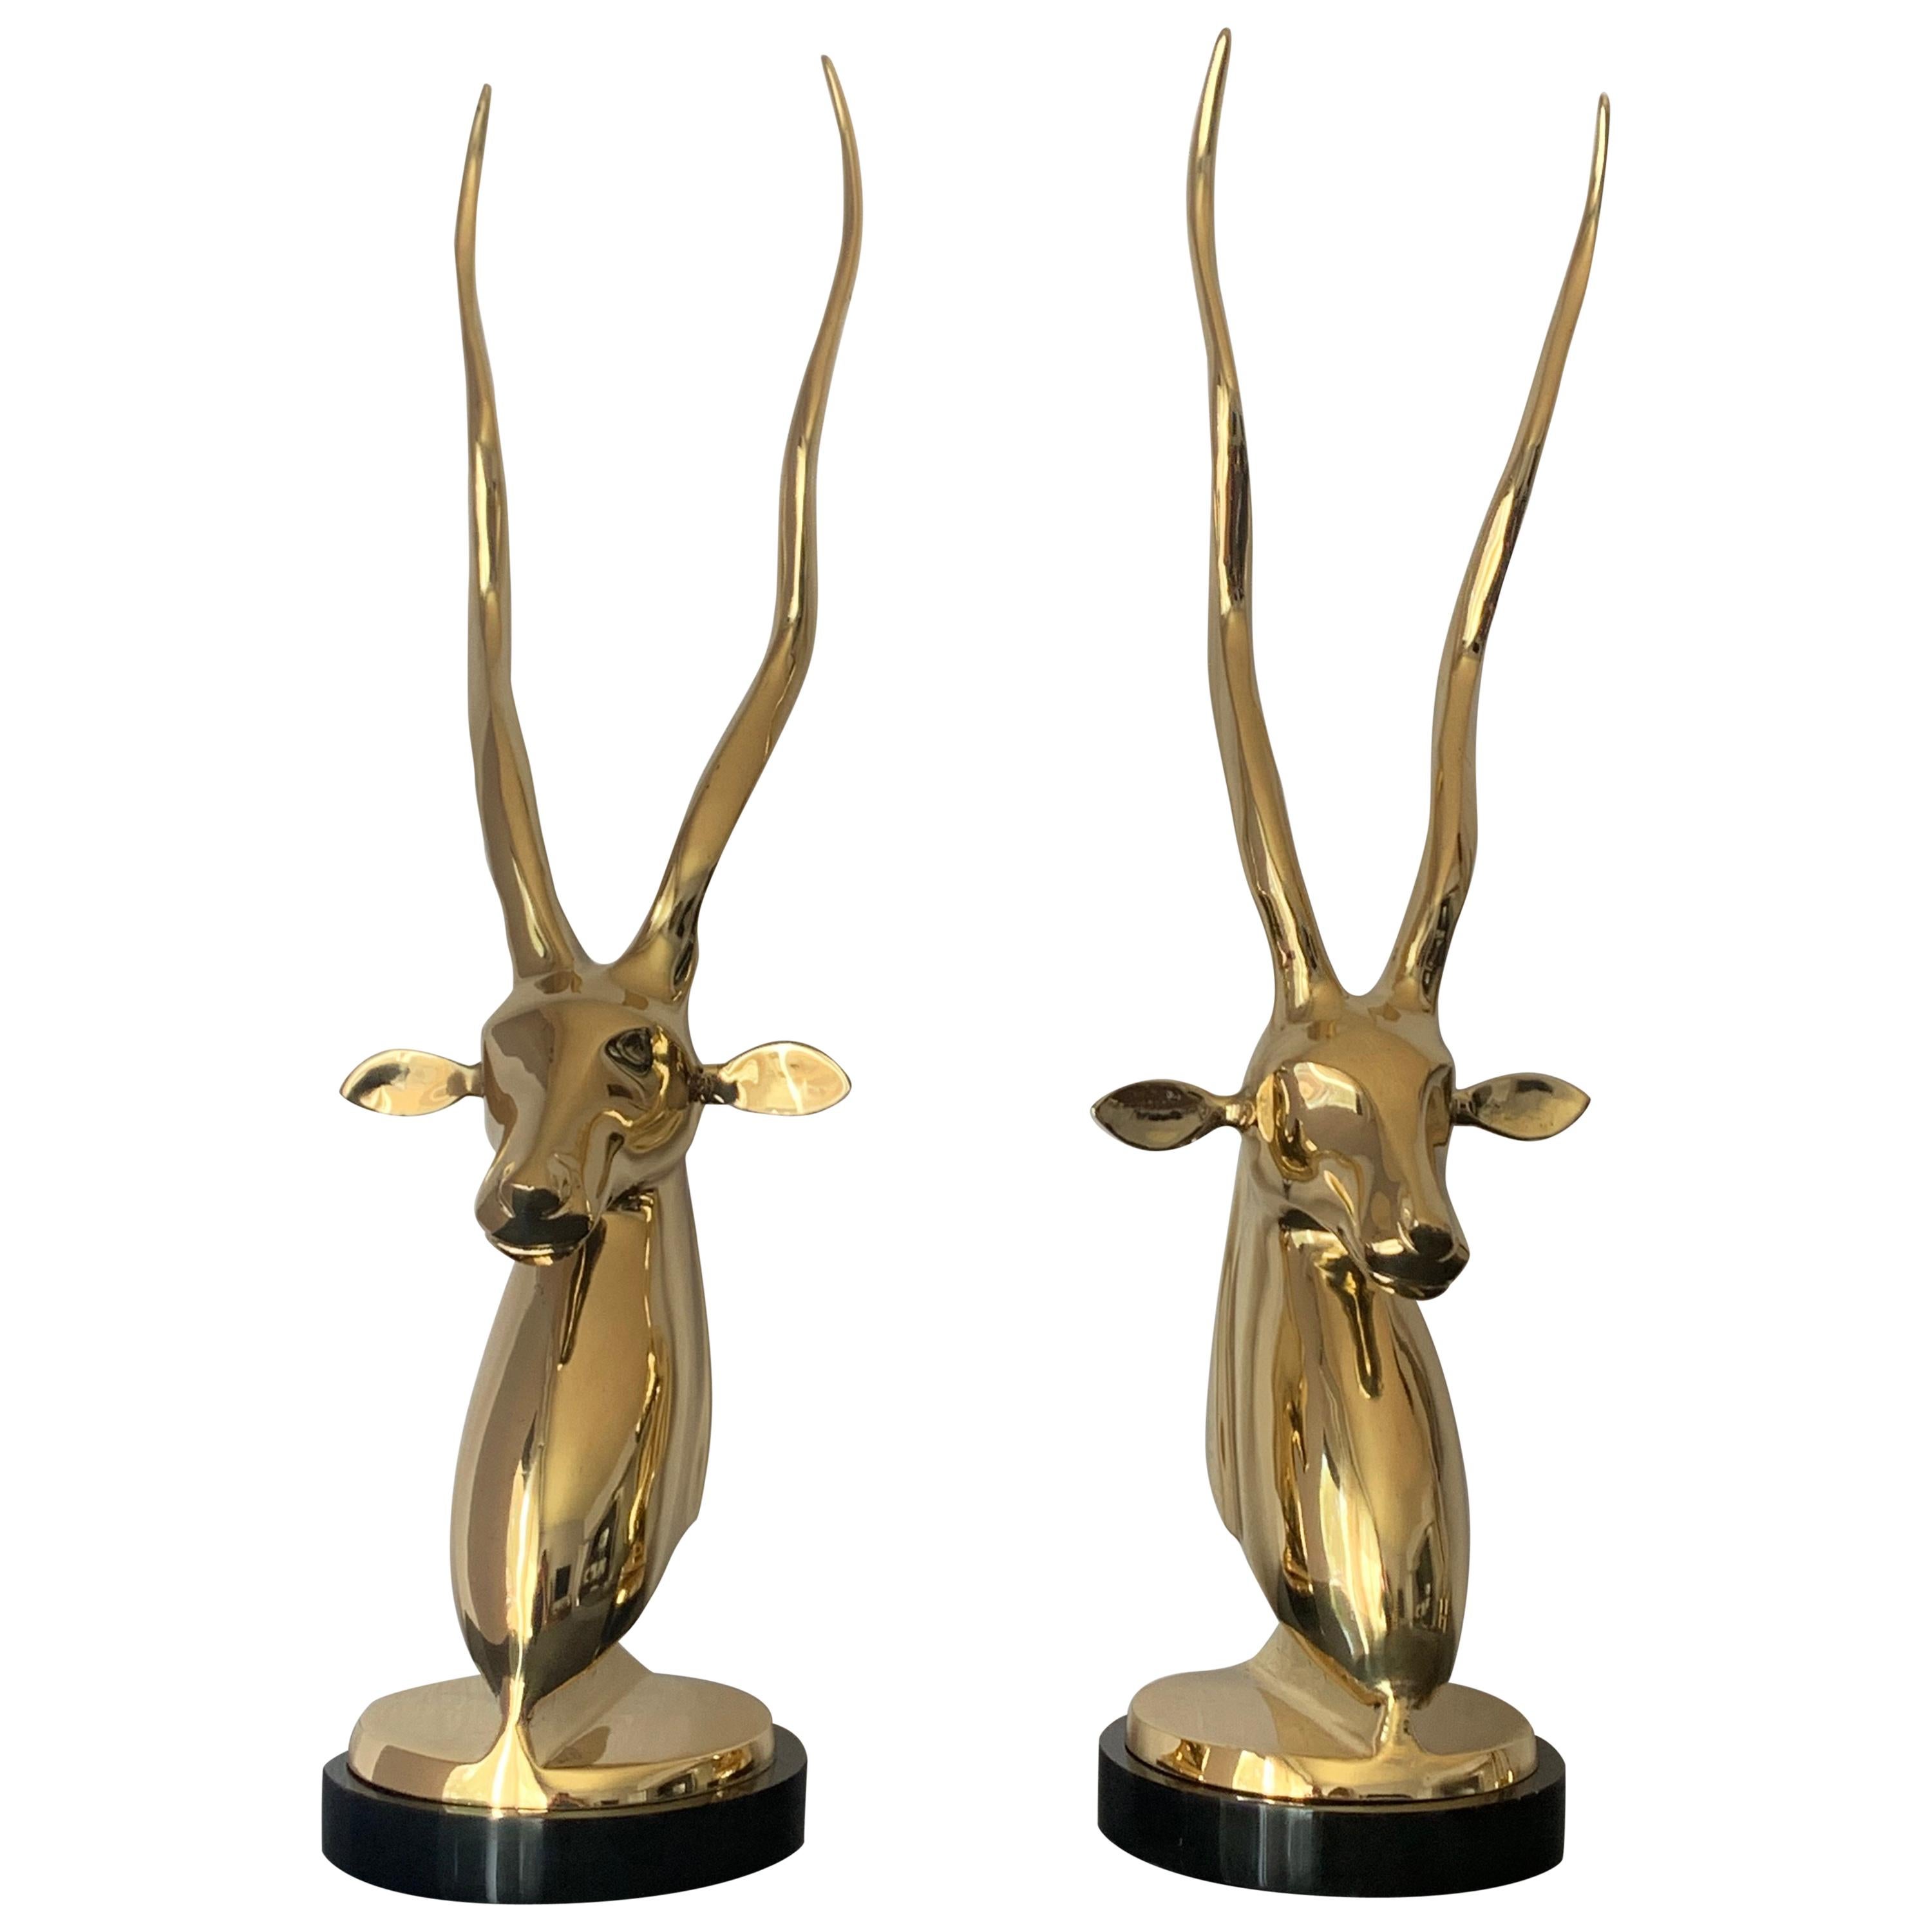 Pair of Brass Kudu or Antelope Busts